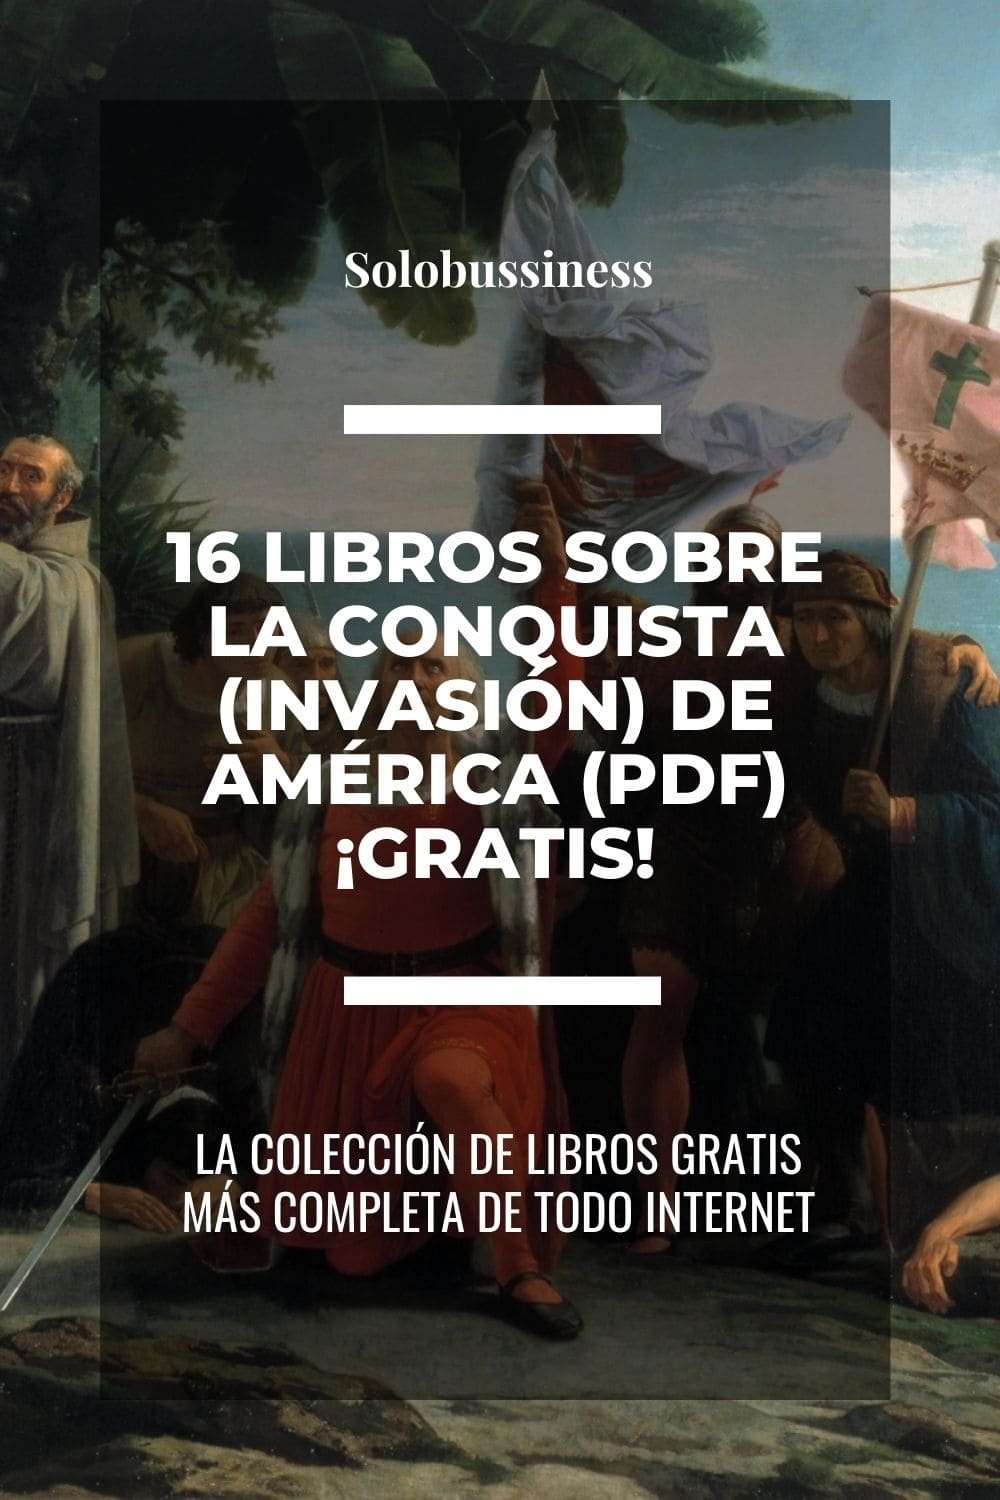 Libros sobre la Conquista (INVASIÓN) de América en formato pdf